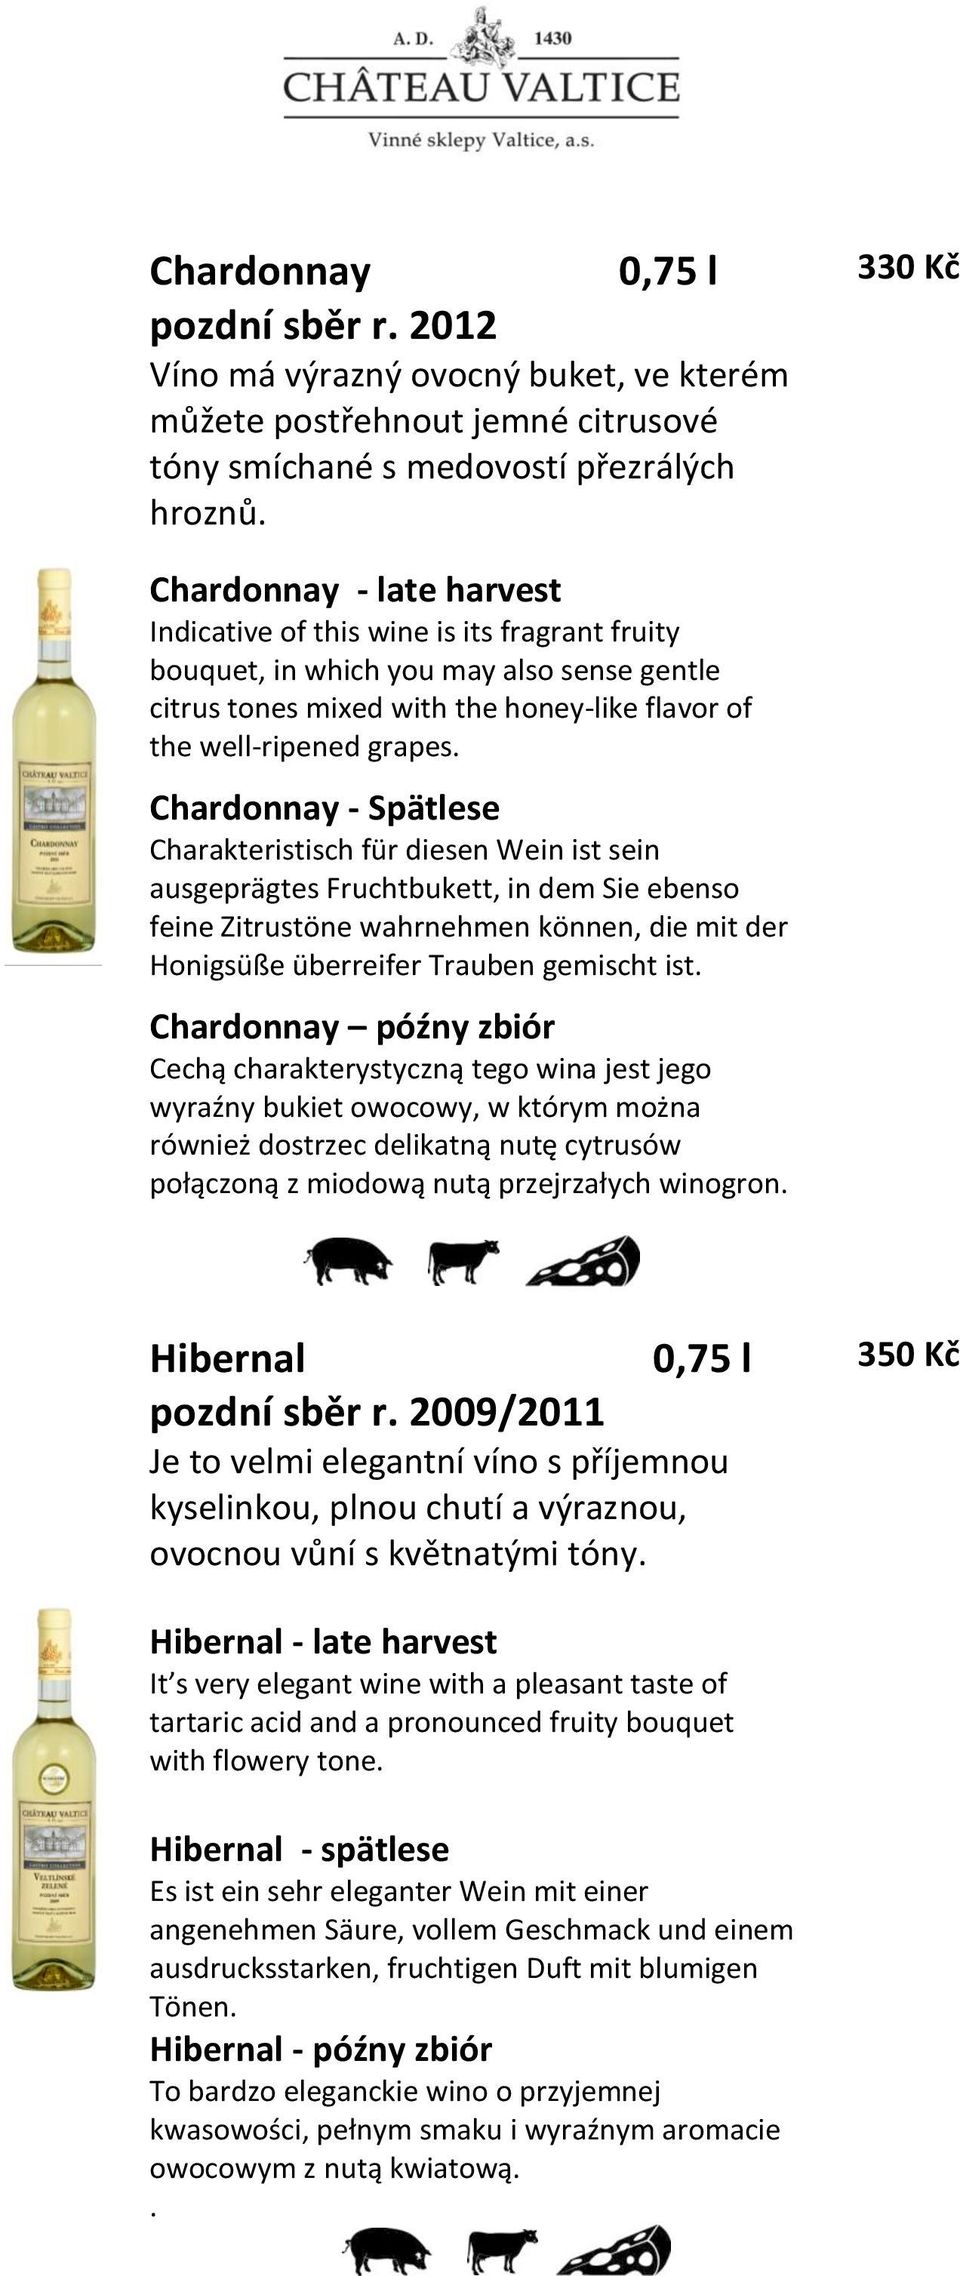 Chardonnay - Spätlese Charakteristisch für diesen Wein ist sein ausgeprägtes Fruchtbukett, in dem Sie ebenso feine Zitrustöne wahrnehmen können, die mit der Honigsüße überreifer Trauben gemischt ist.